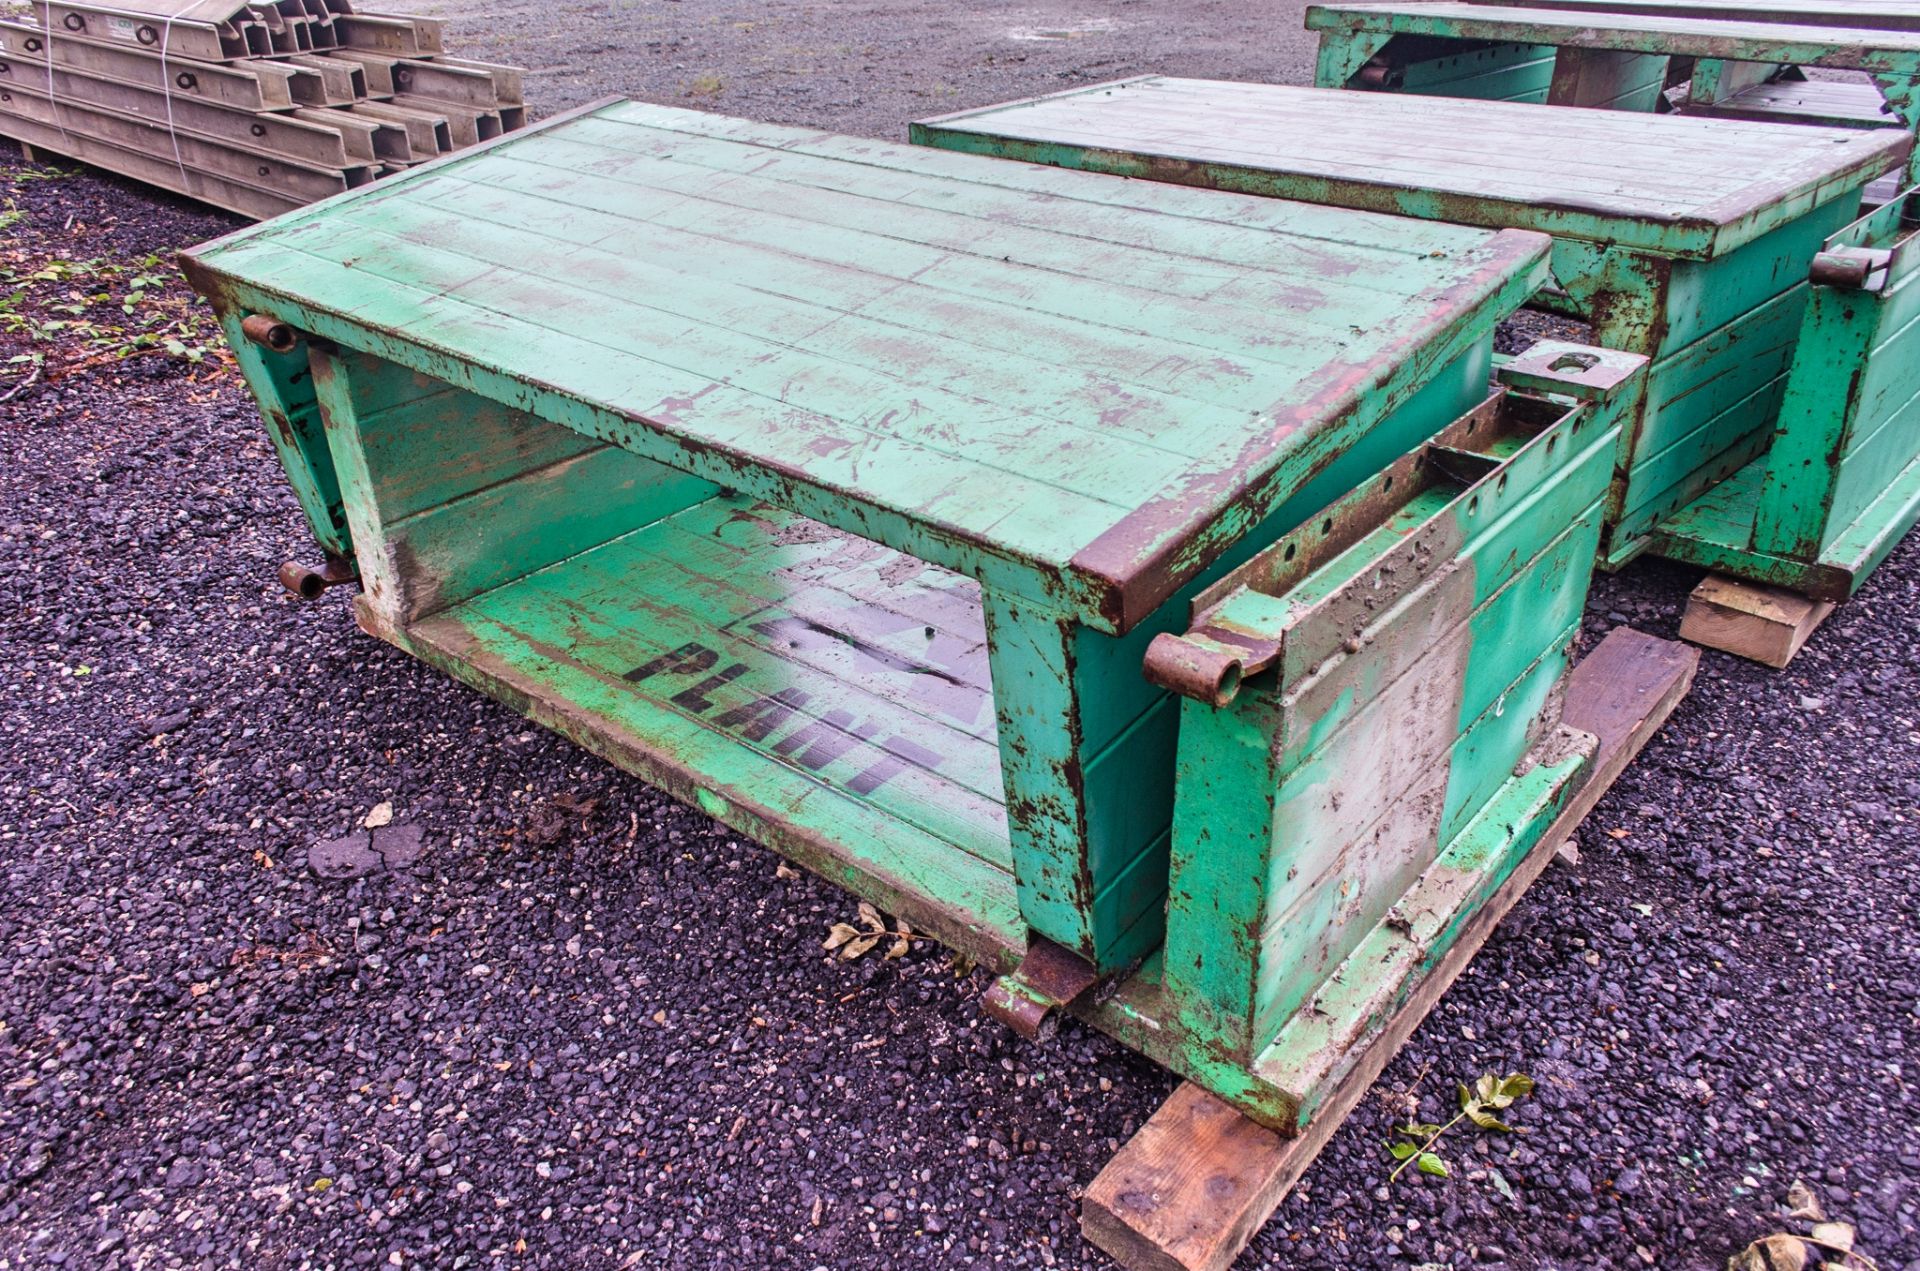 2 metre x 1 metre trench box - Image 2 of 2